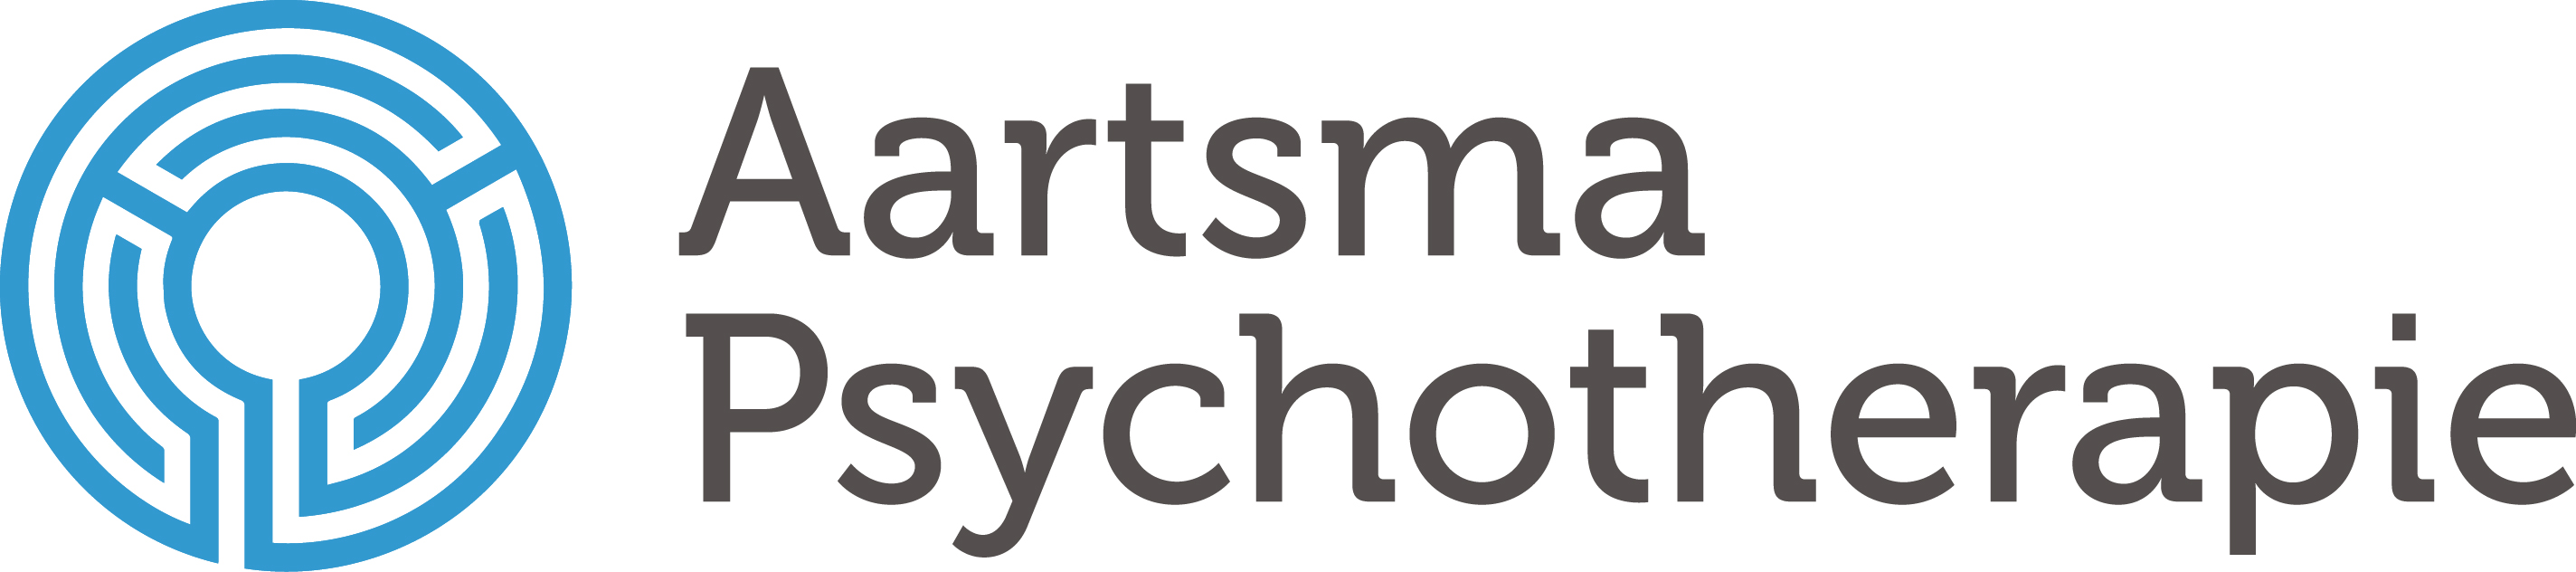 Aartsma Psychotherapie